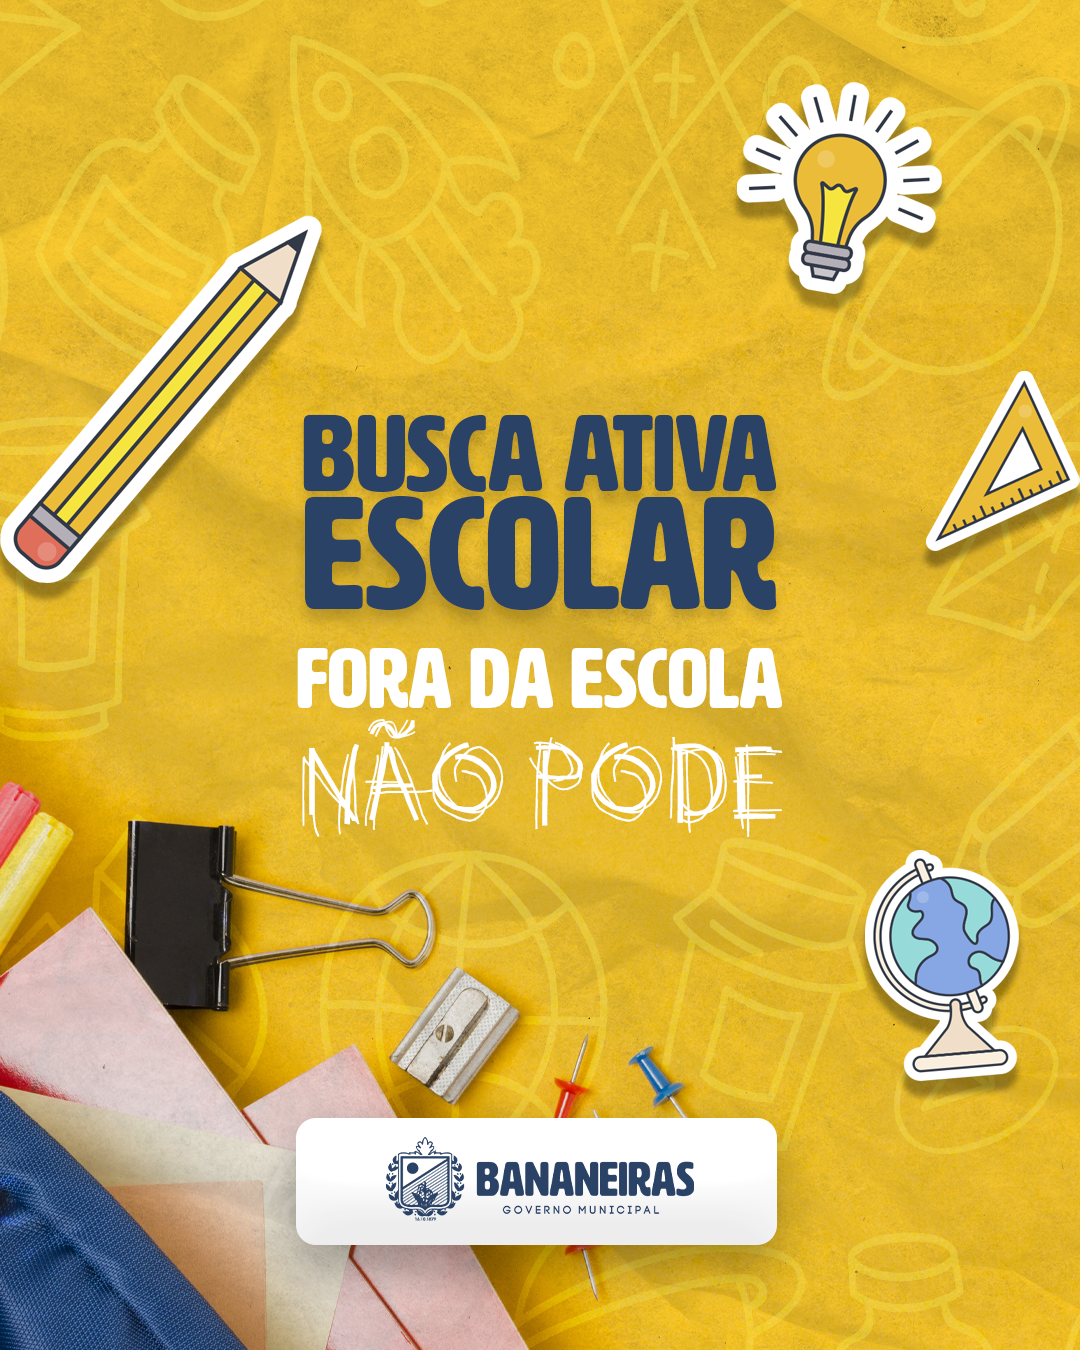 Governo Municipal incentiva campanha de busca ativa escolar na cidade de Bananeiras